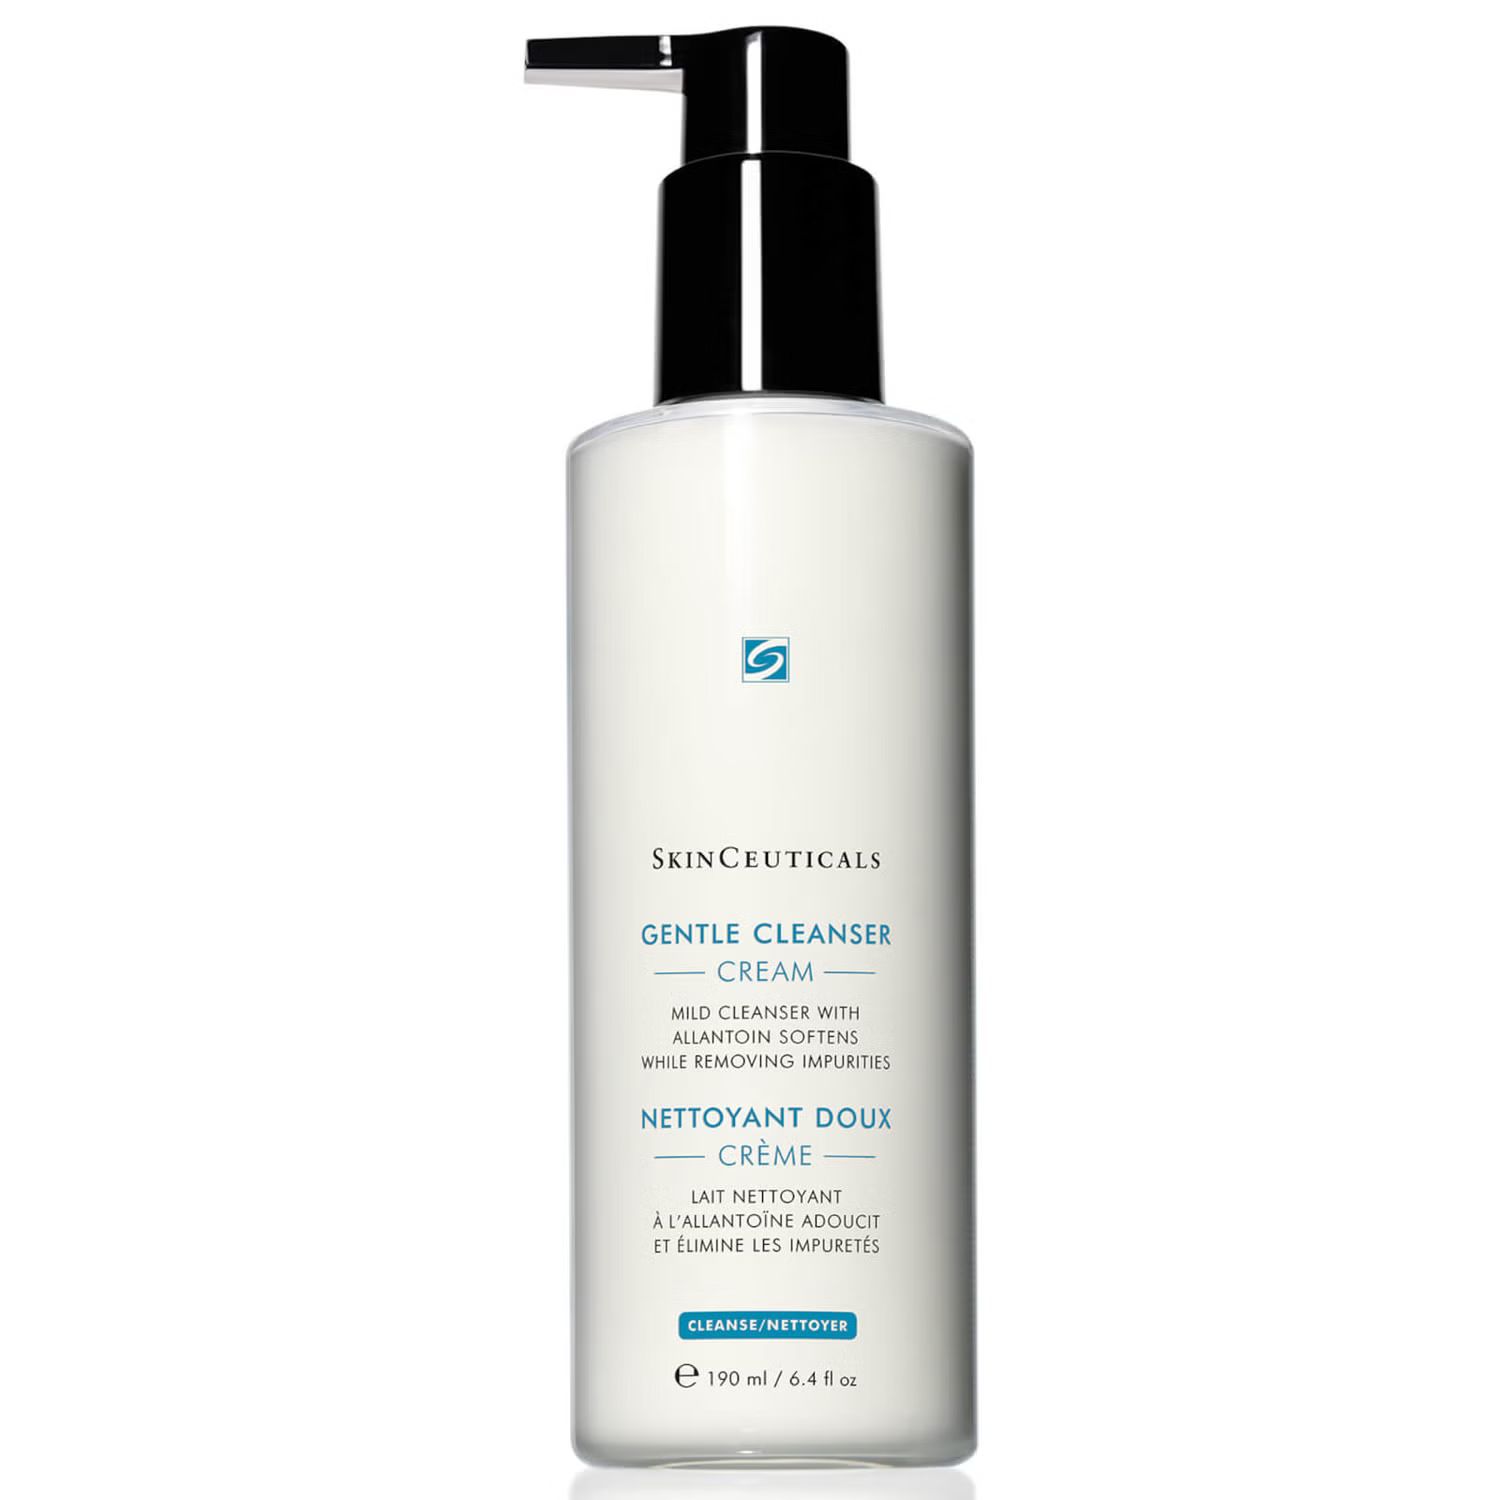 SkinCeuticals Gentle Cleanser (6.42 fl. oz.) | Dermstore (US)